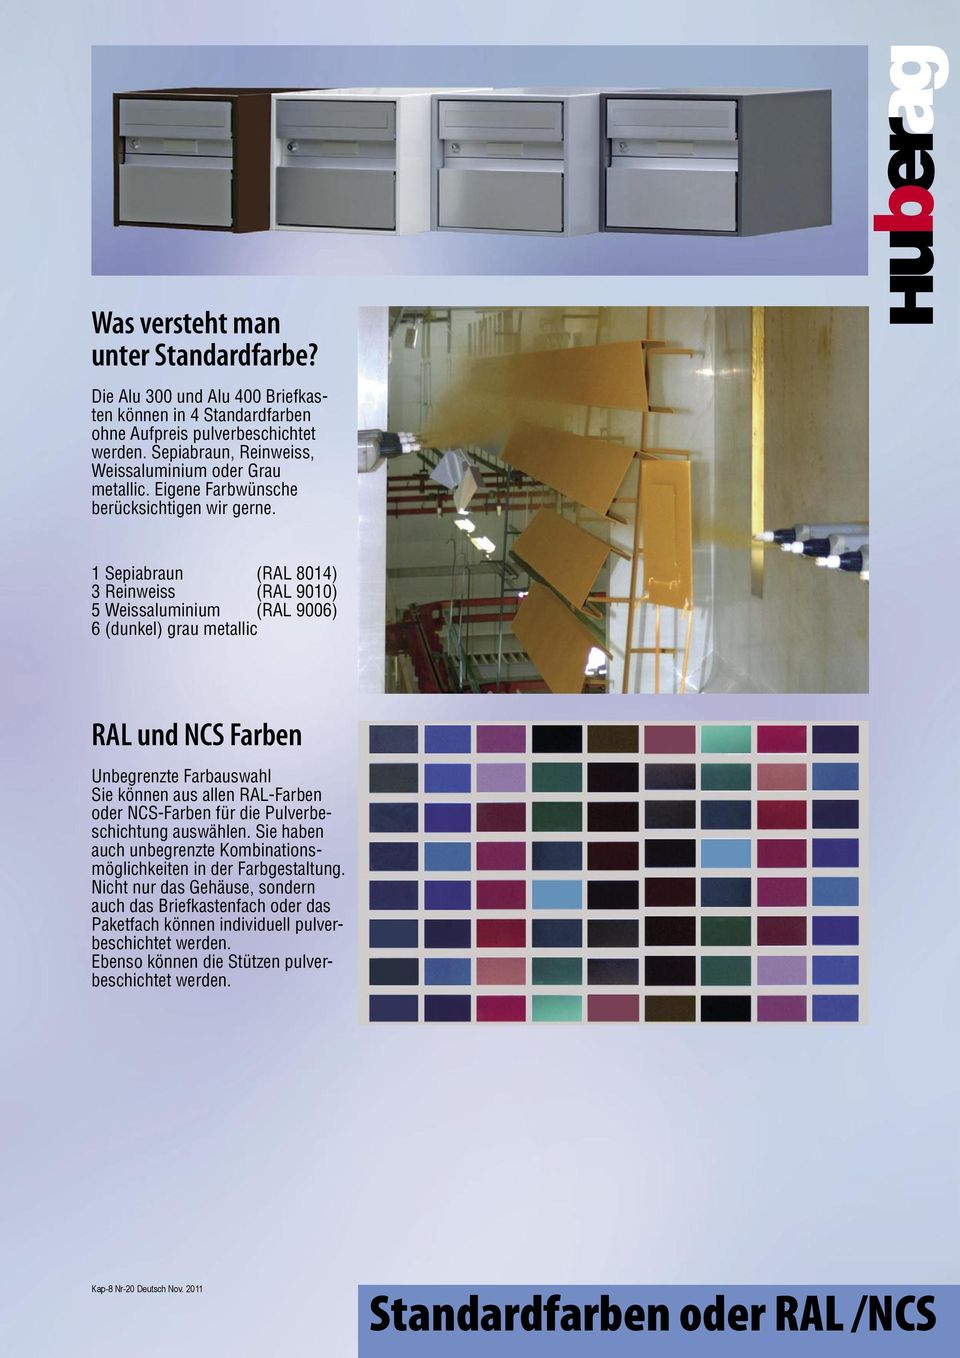 1 Sepiabraun (RAL 8014) 3 Reinweiss (RAL 9010) 5 Weissaluminium (RAL 9006) 6 (dunkel) grau metallic RAL und NCS Farben Unbegrenzte Farbauswahl Sie können aus allen RAL-Farben oder NCS-Farben für